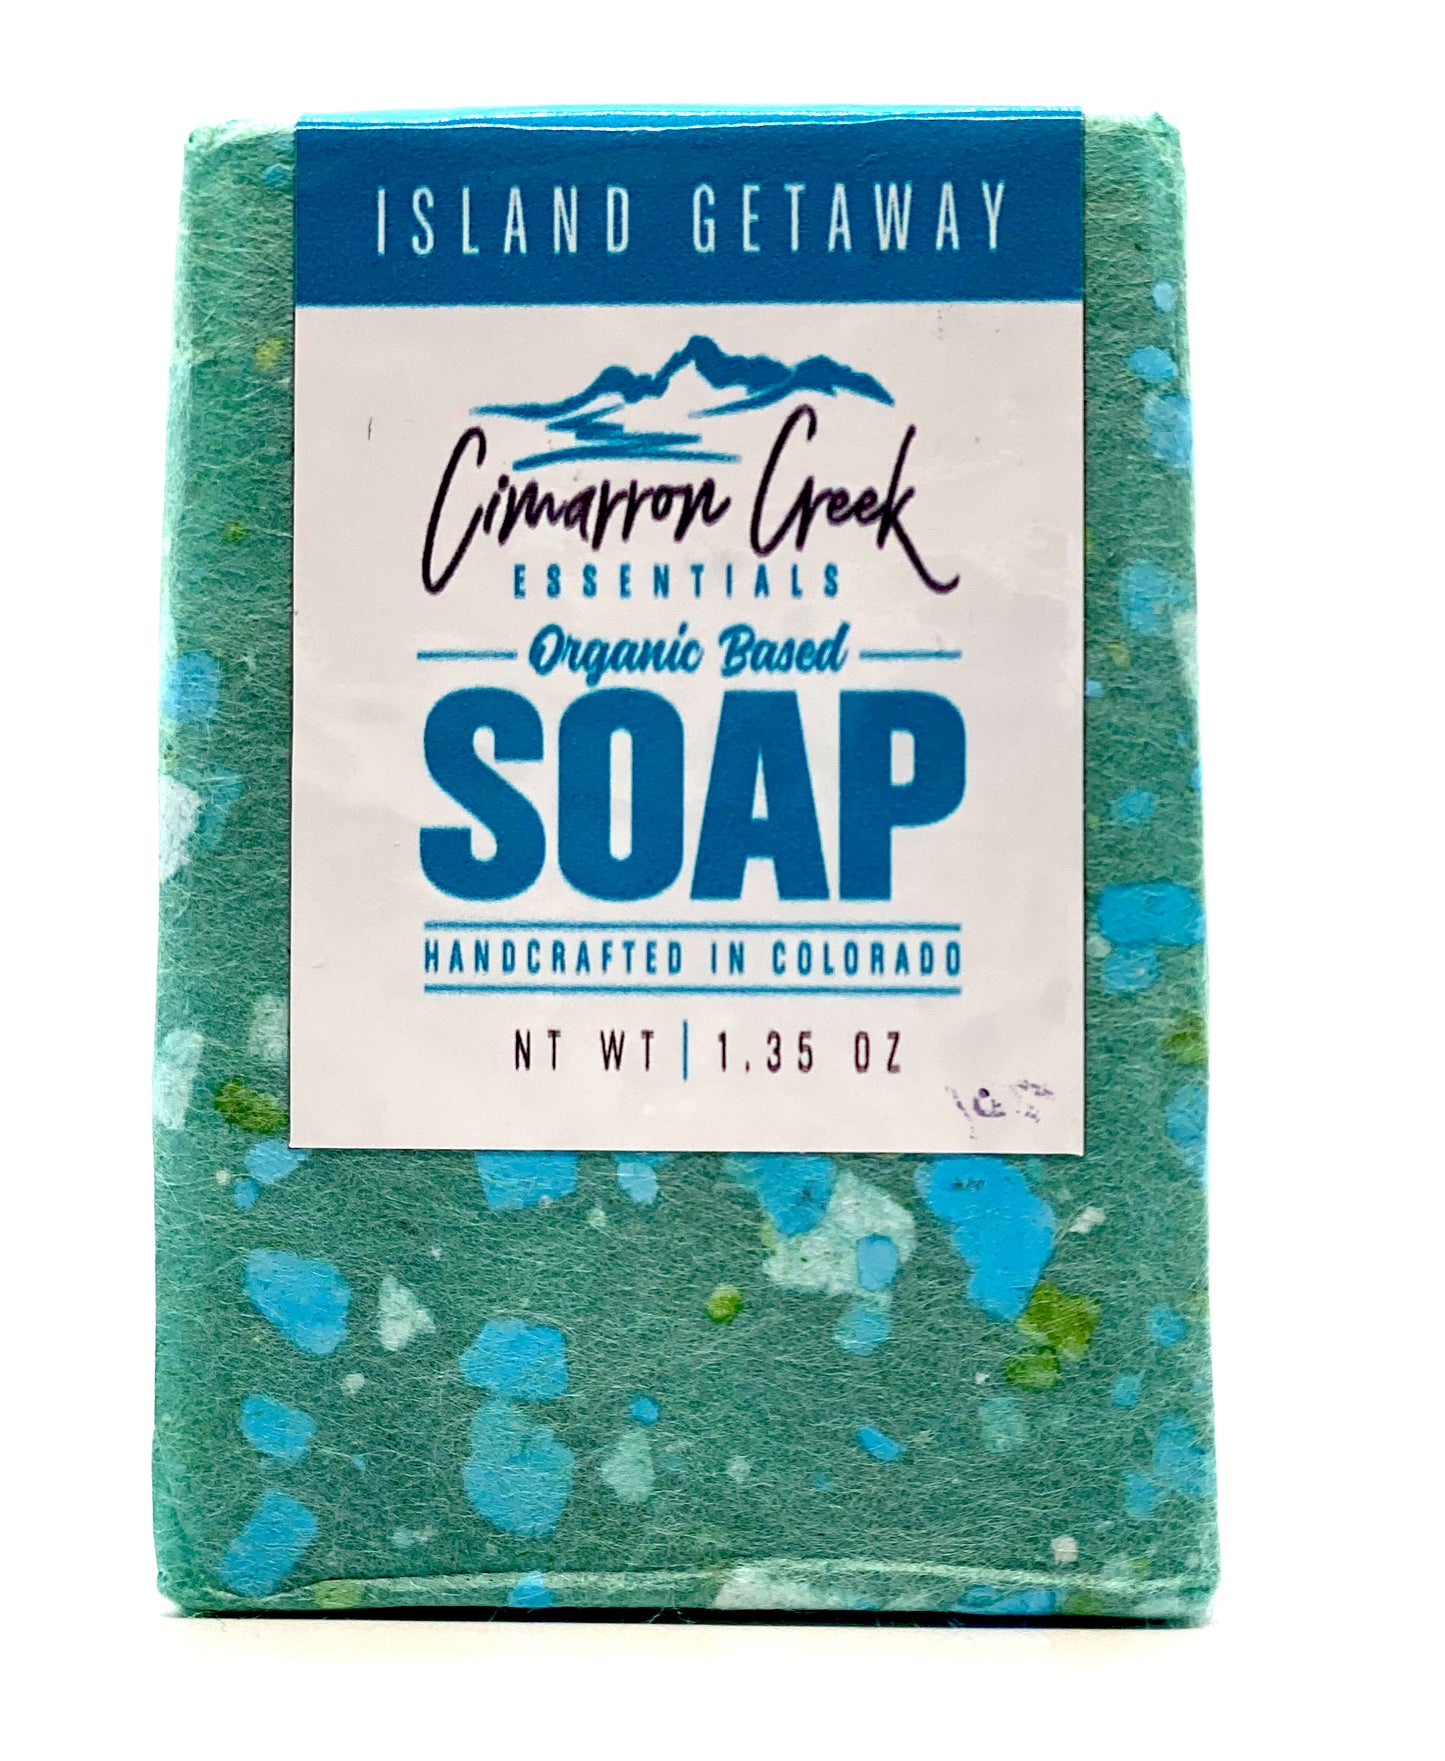 Island Getaway Organic Bar Soap 5.4oz